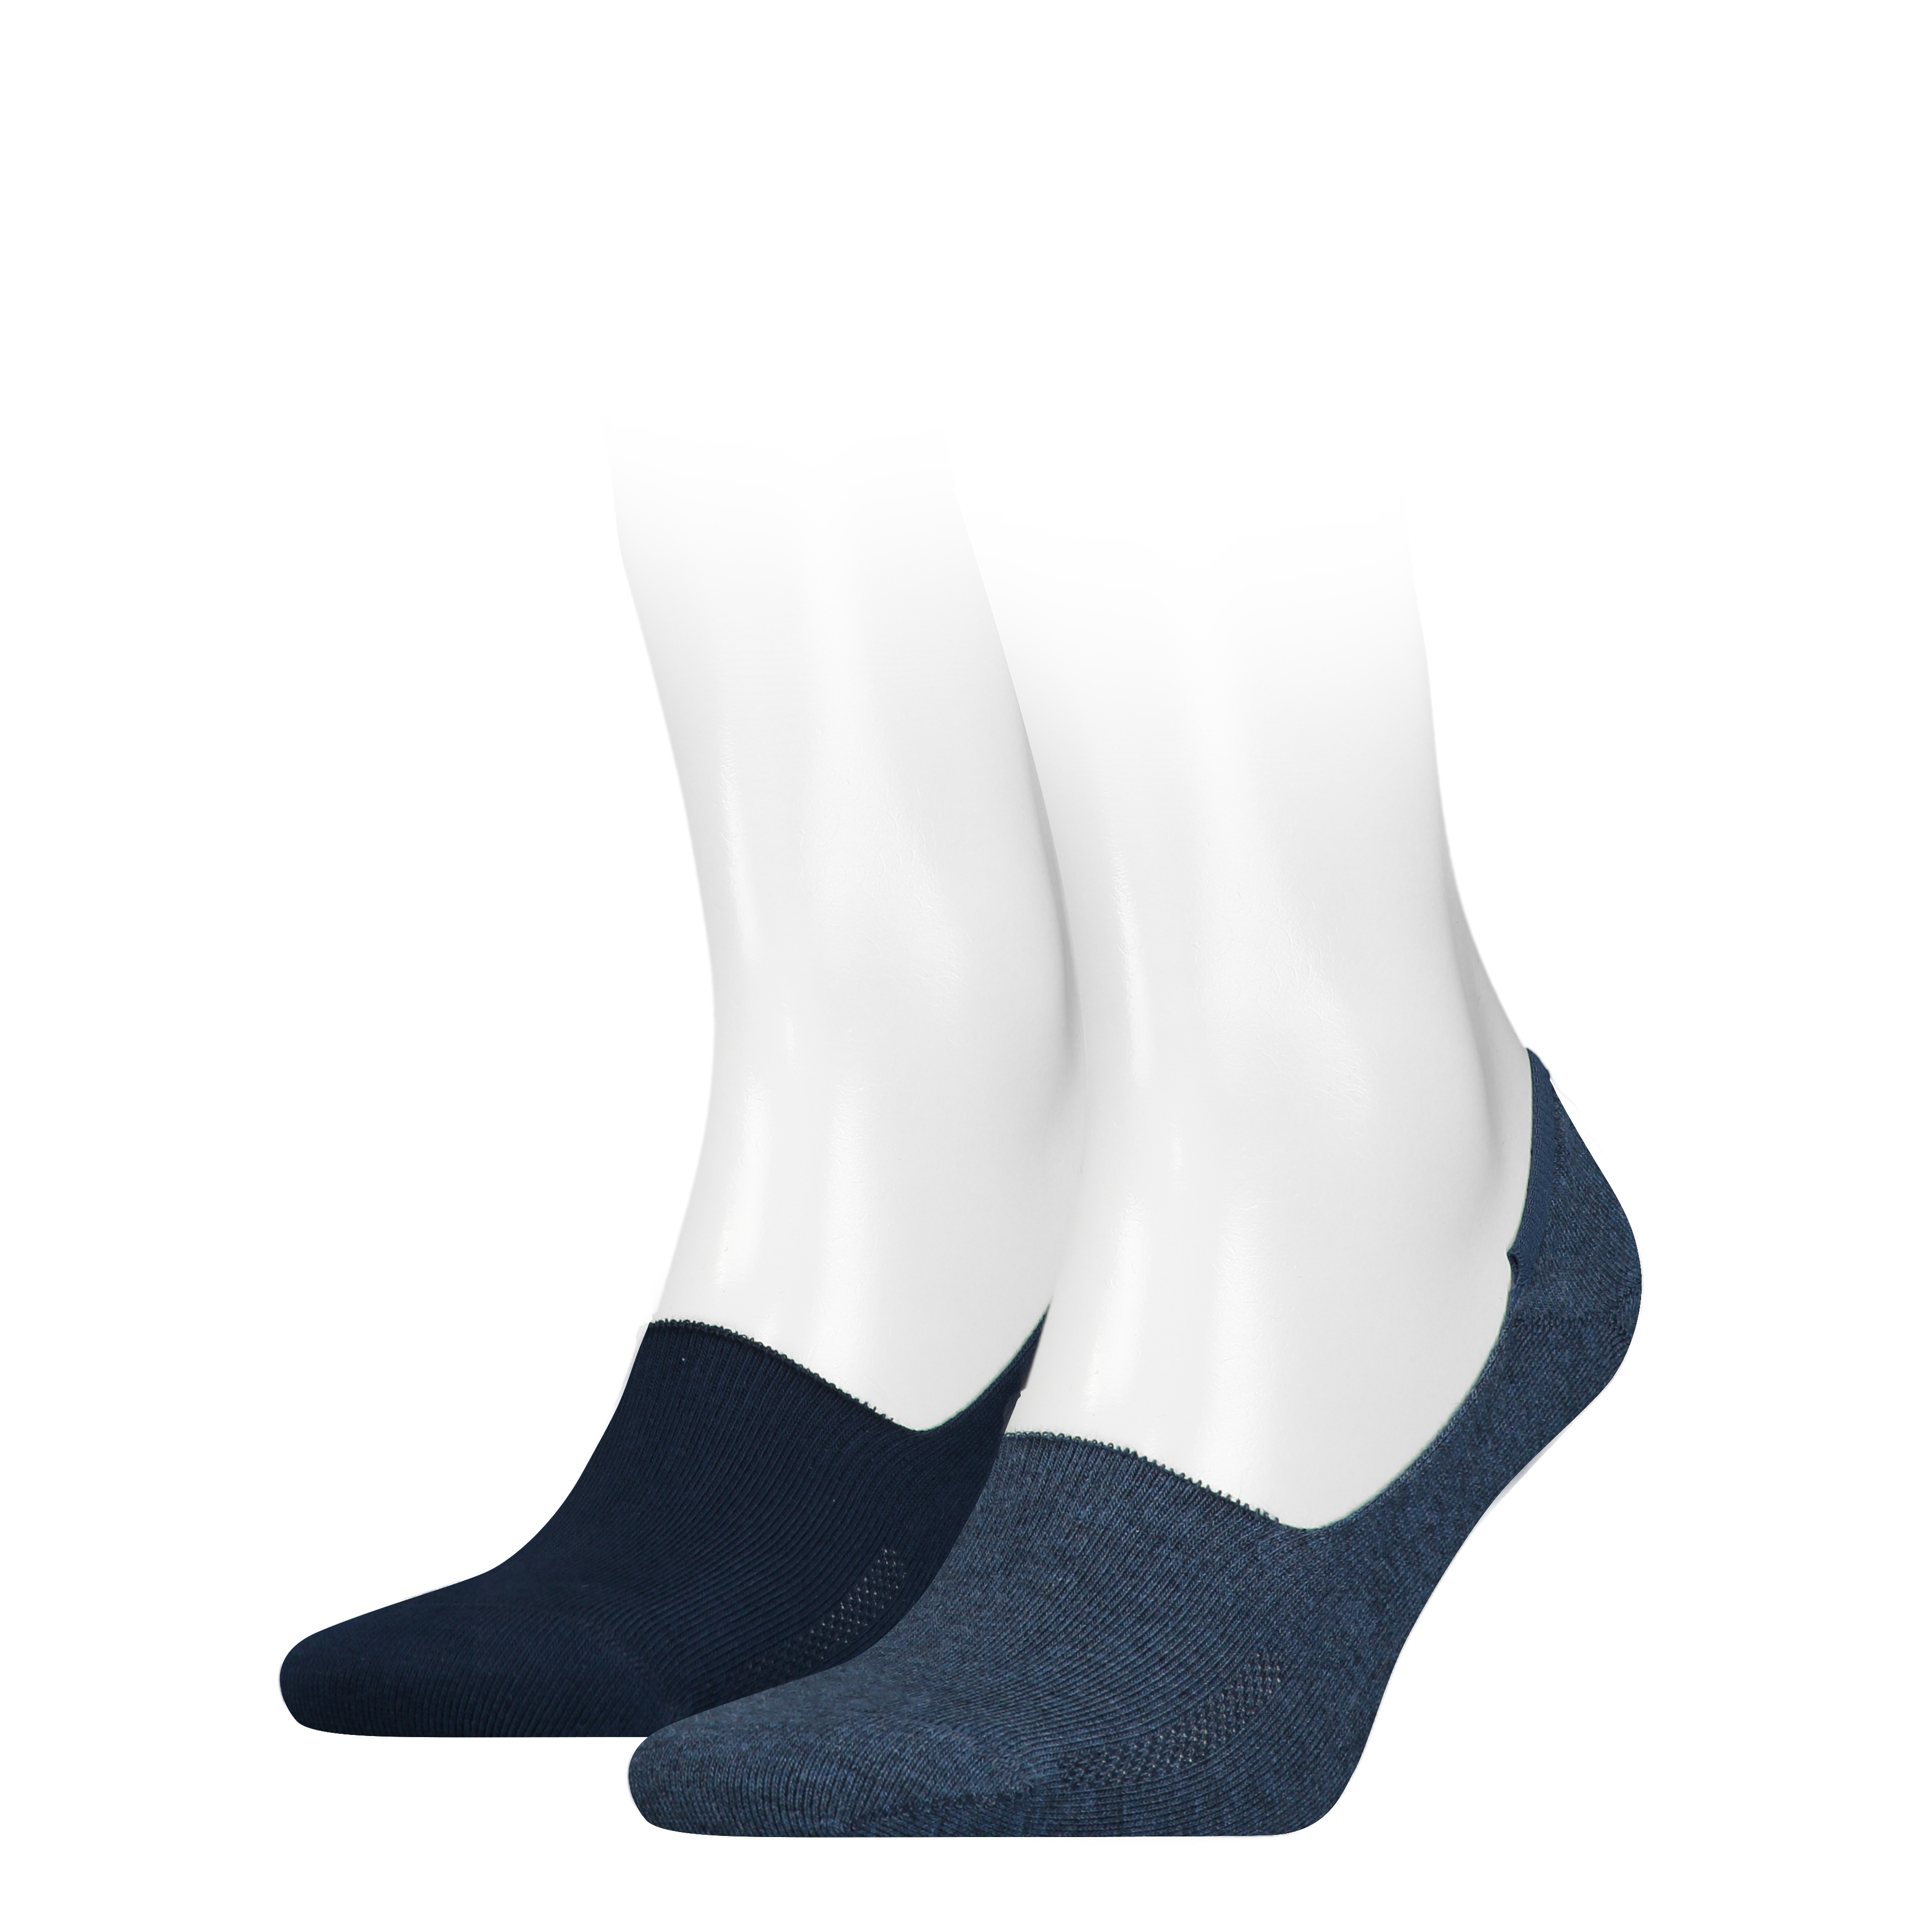 Levis pánské ponožky 2 kusy 37157-0190 Modrá 43-46